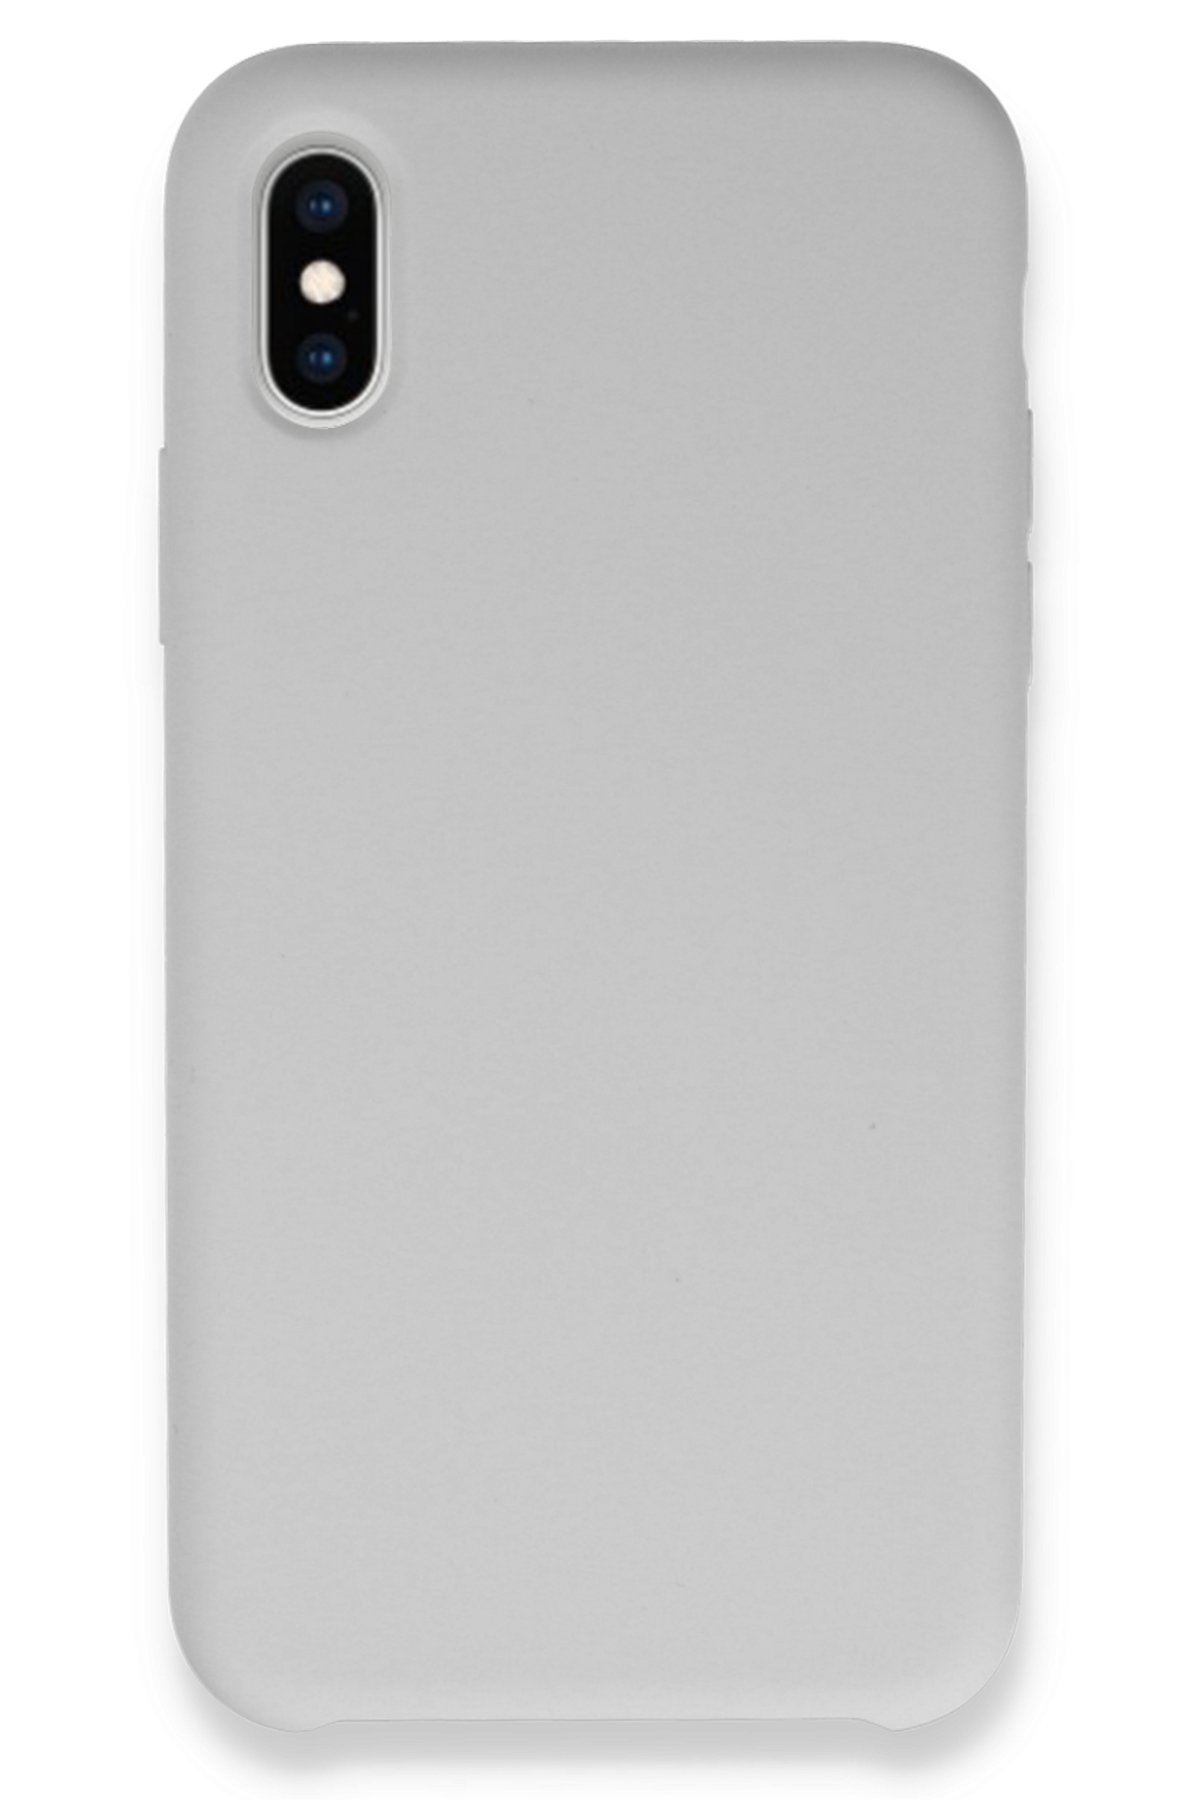 Newface iPhone X Kılıf Platin Silikon - Kırmızı